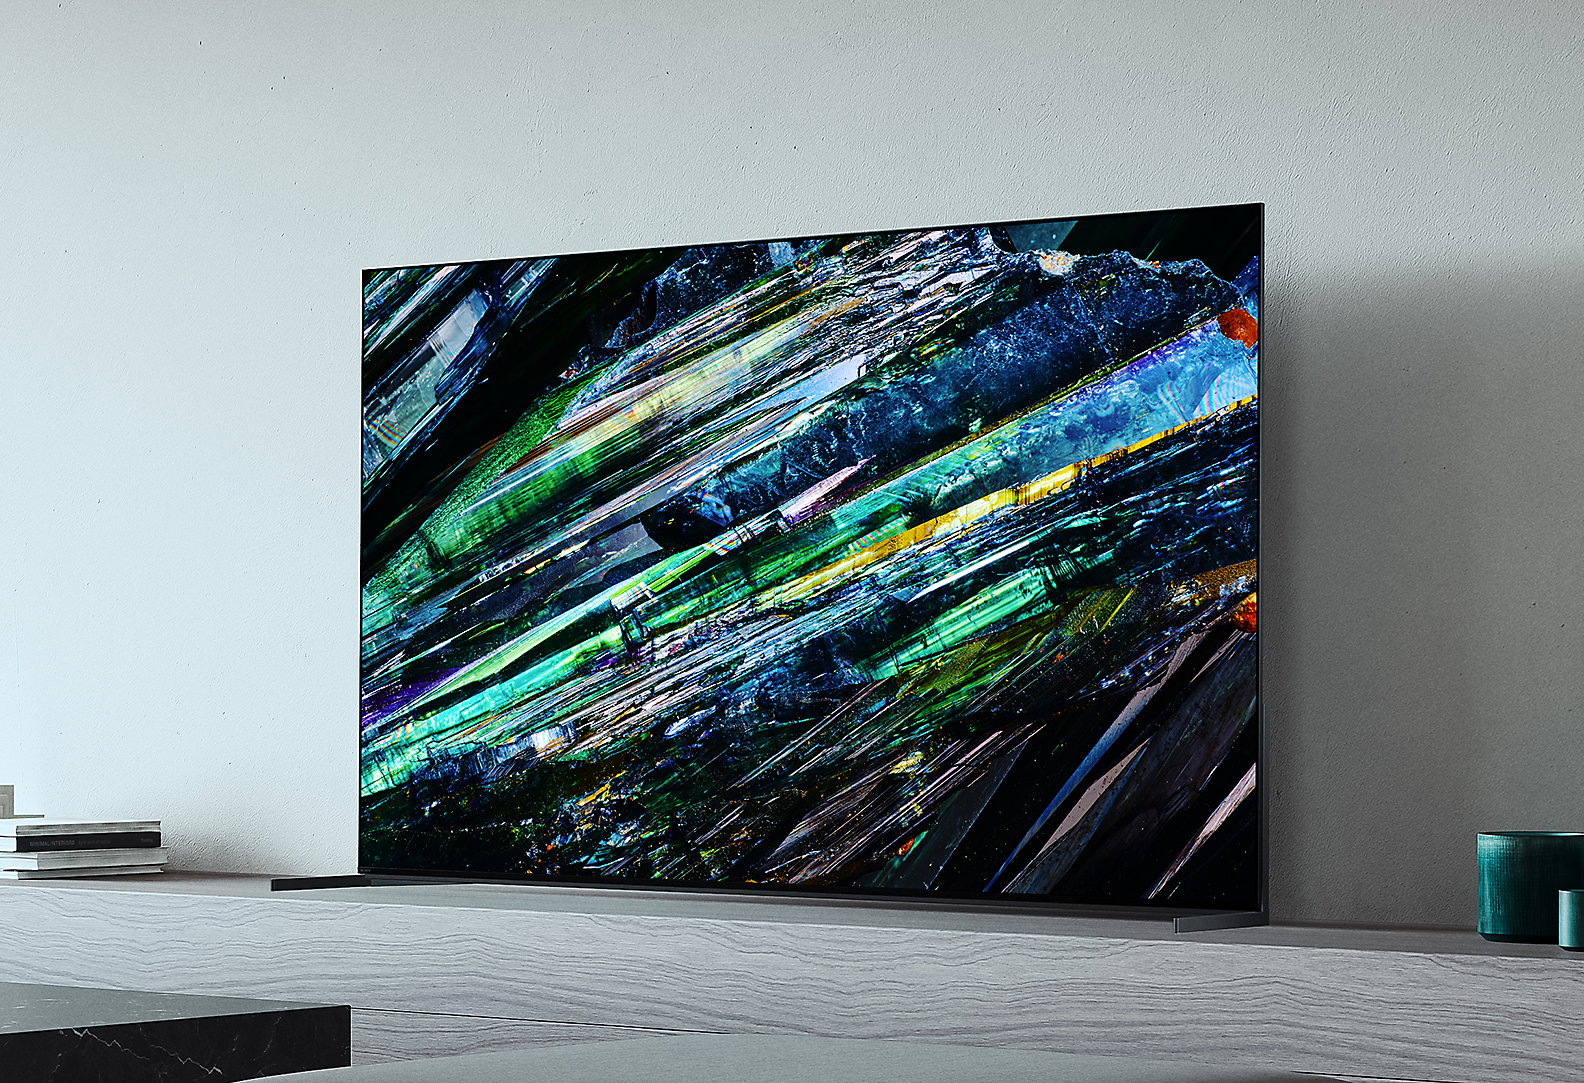 تلفزيون BRAVIA A95L في غرفة المعيشة مع كتب ونبتة بالقرب من التلفزيون وأعمال فنية متعددة الألوان على الشاشة